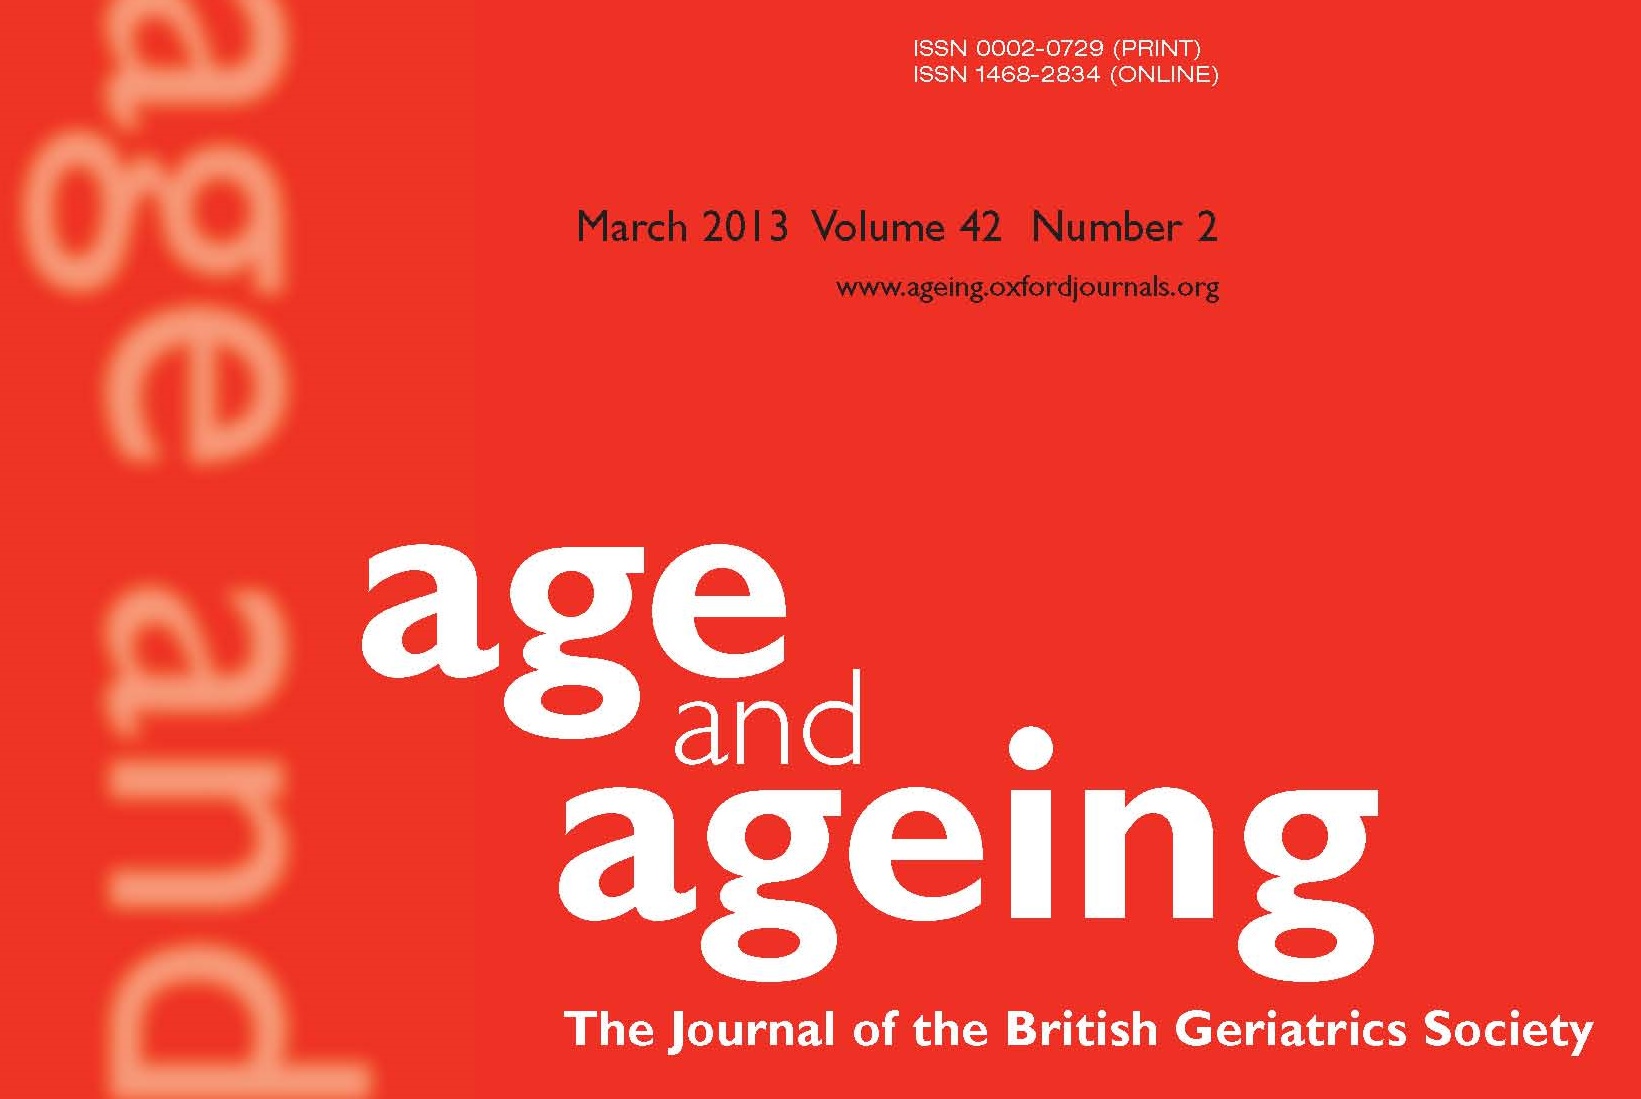 Estudo publicado na revista Age and Aging faz revisão de estudos sobre fragilidade